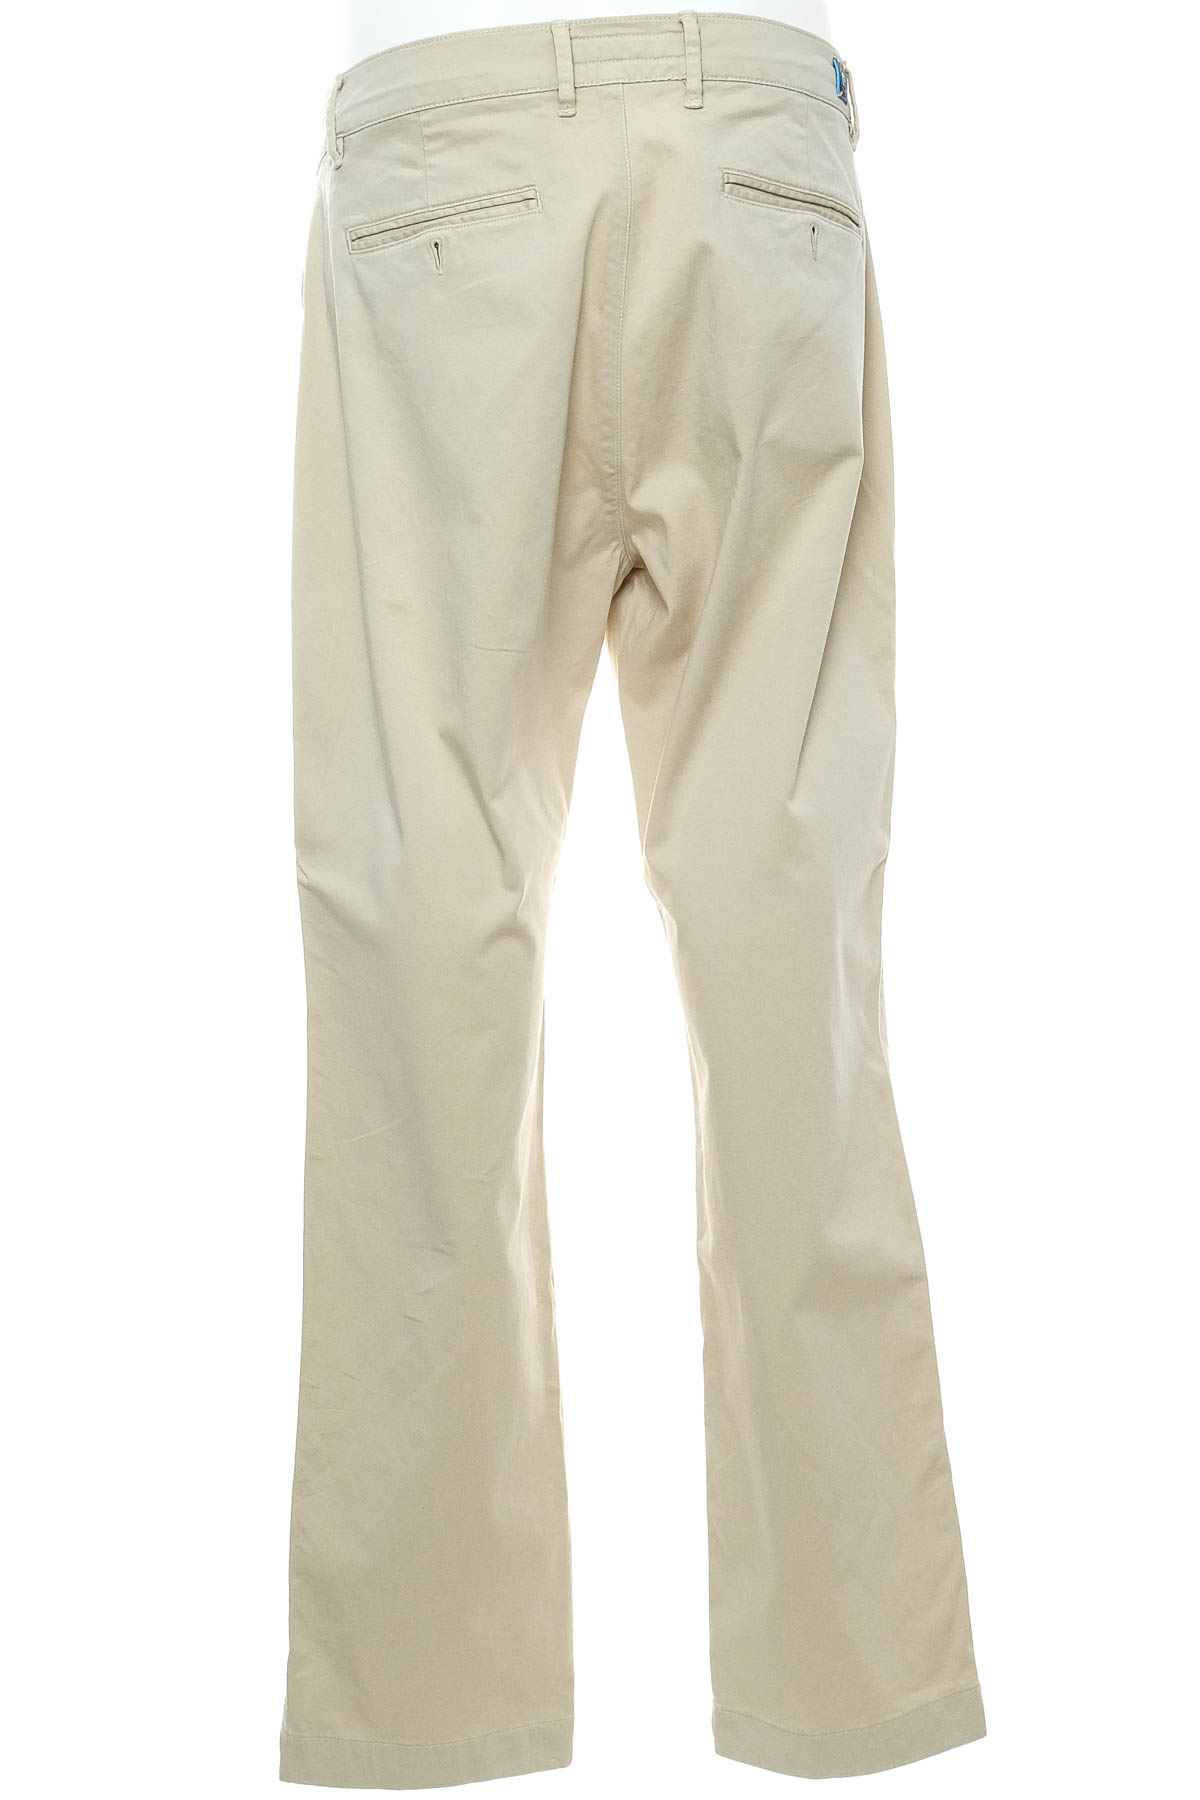 Pantalon pentru bărbați - Pierre Cardin - 1